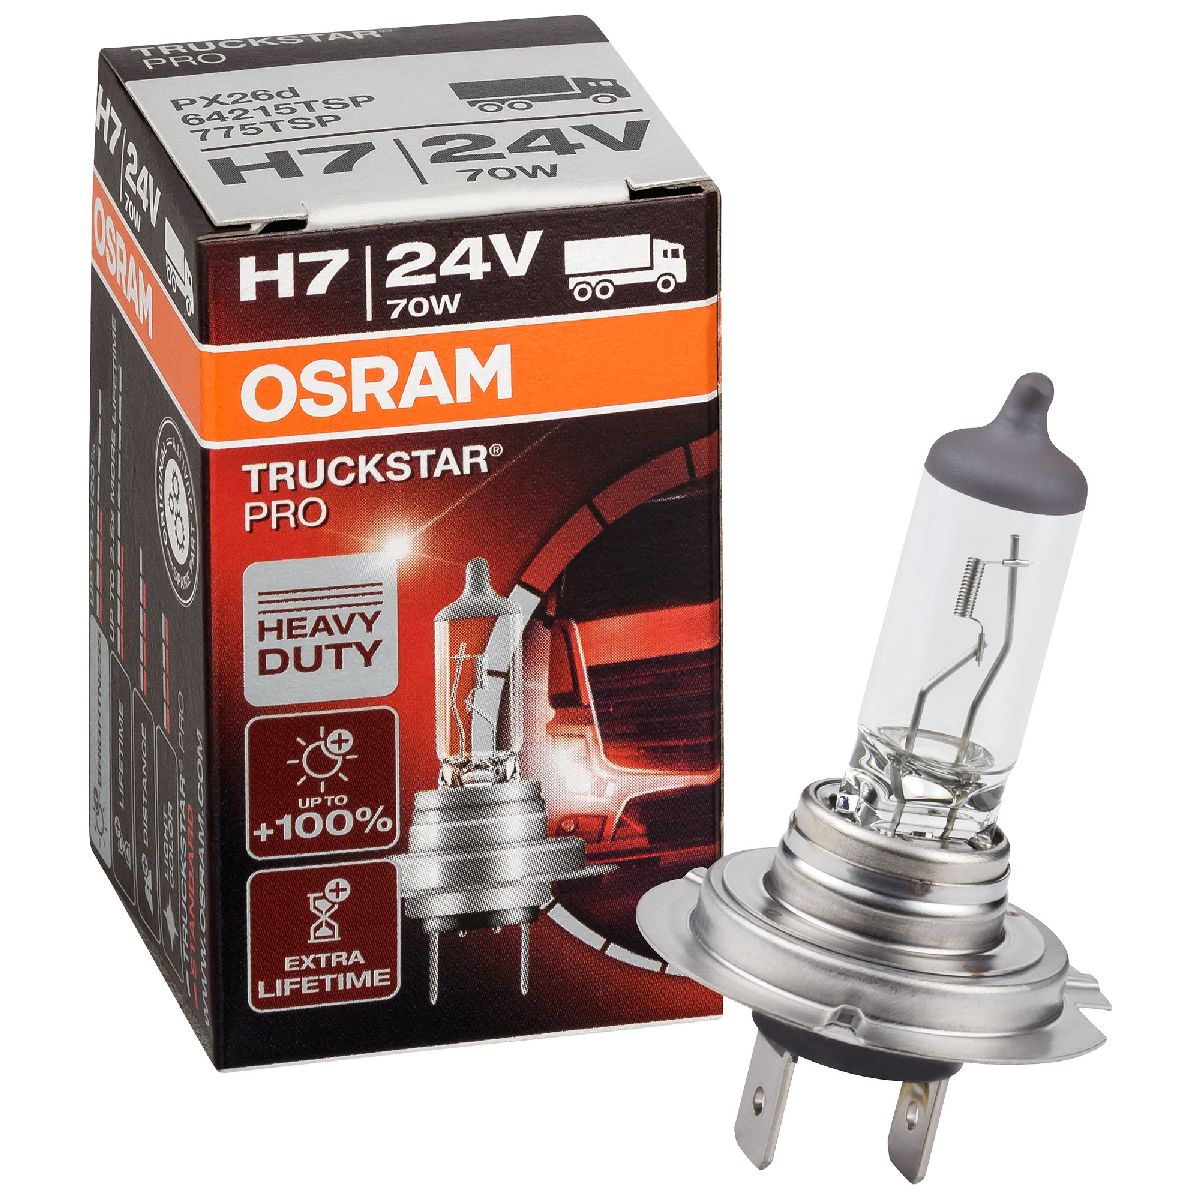 Auto-Lampen-Discount - H7 Lampen und mehr günstig kaufen - BREHMA Classic  H7 12V 55W Halogen Autolampe Standard